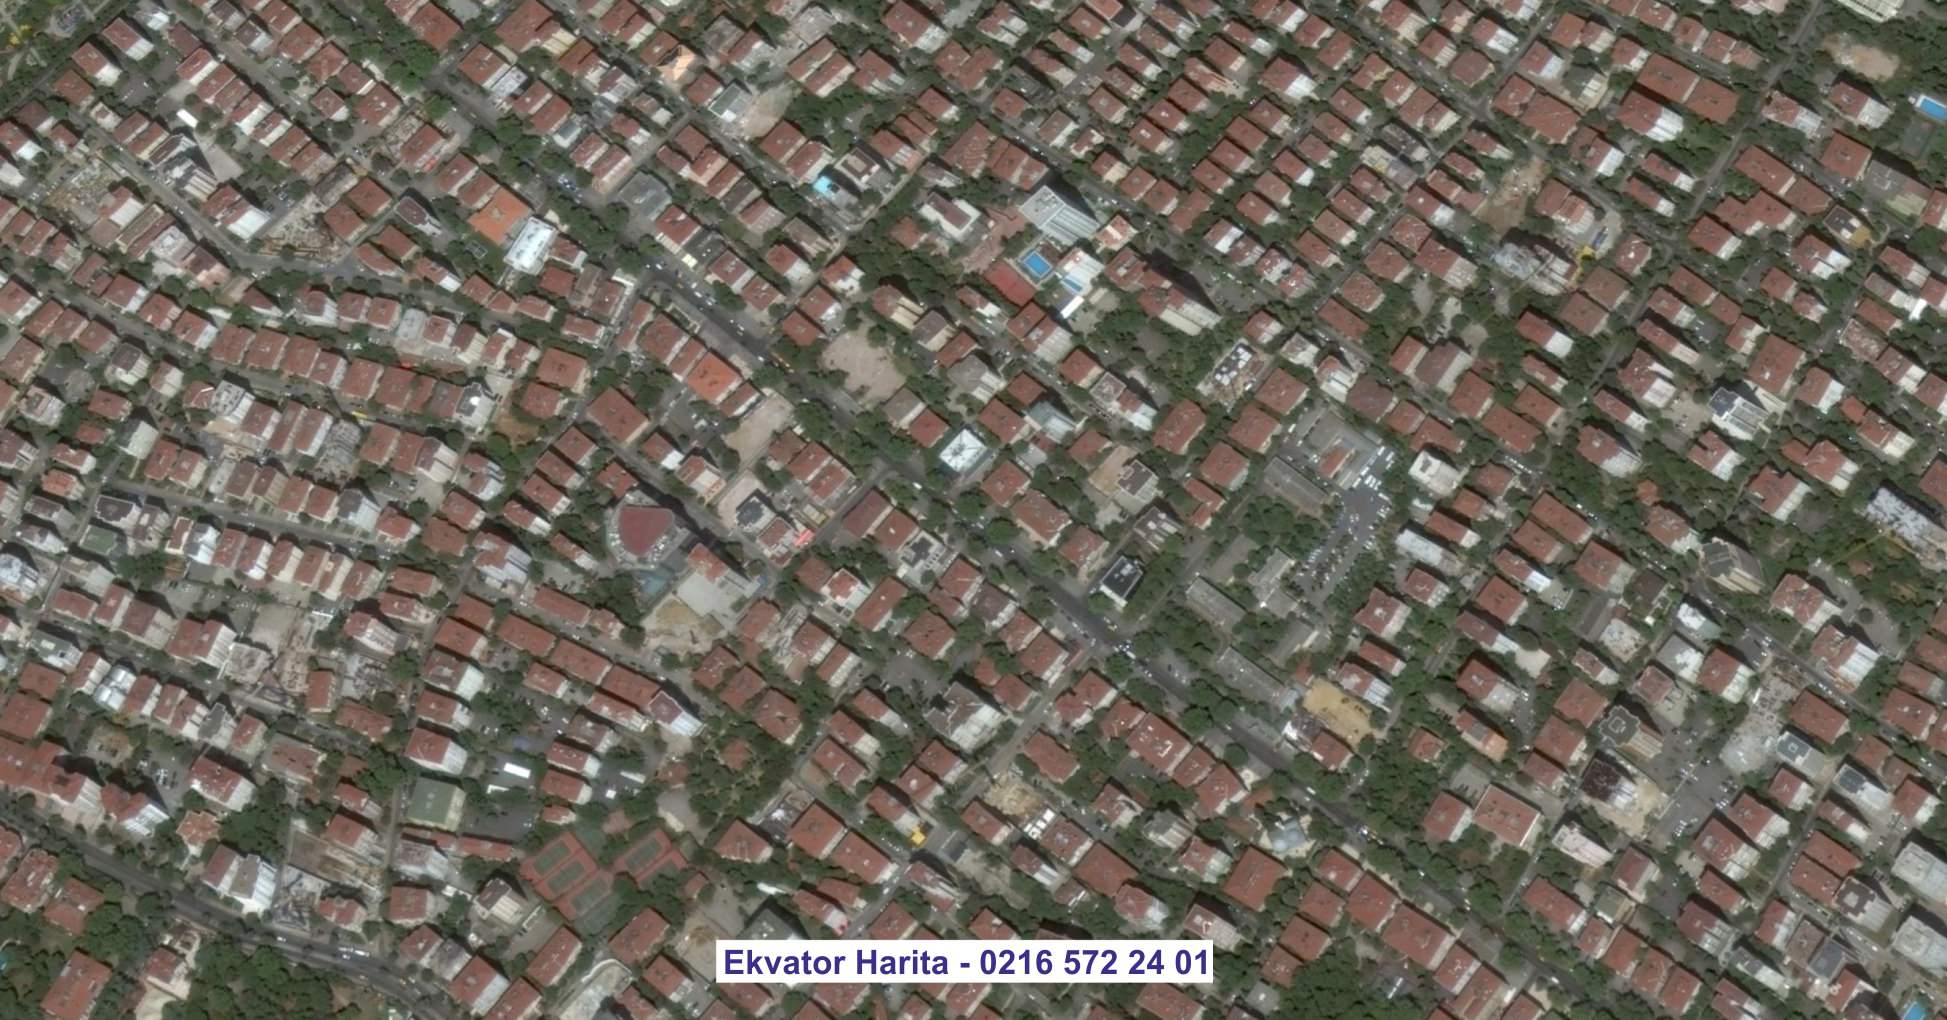 Fethiye Uydu Görüntüsü Örnek Fotoğrafı